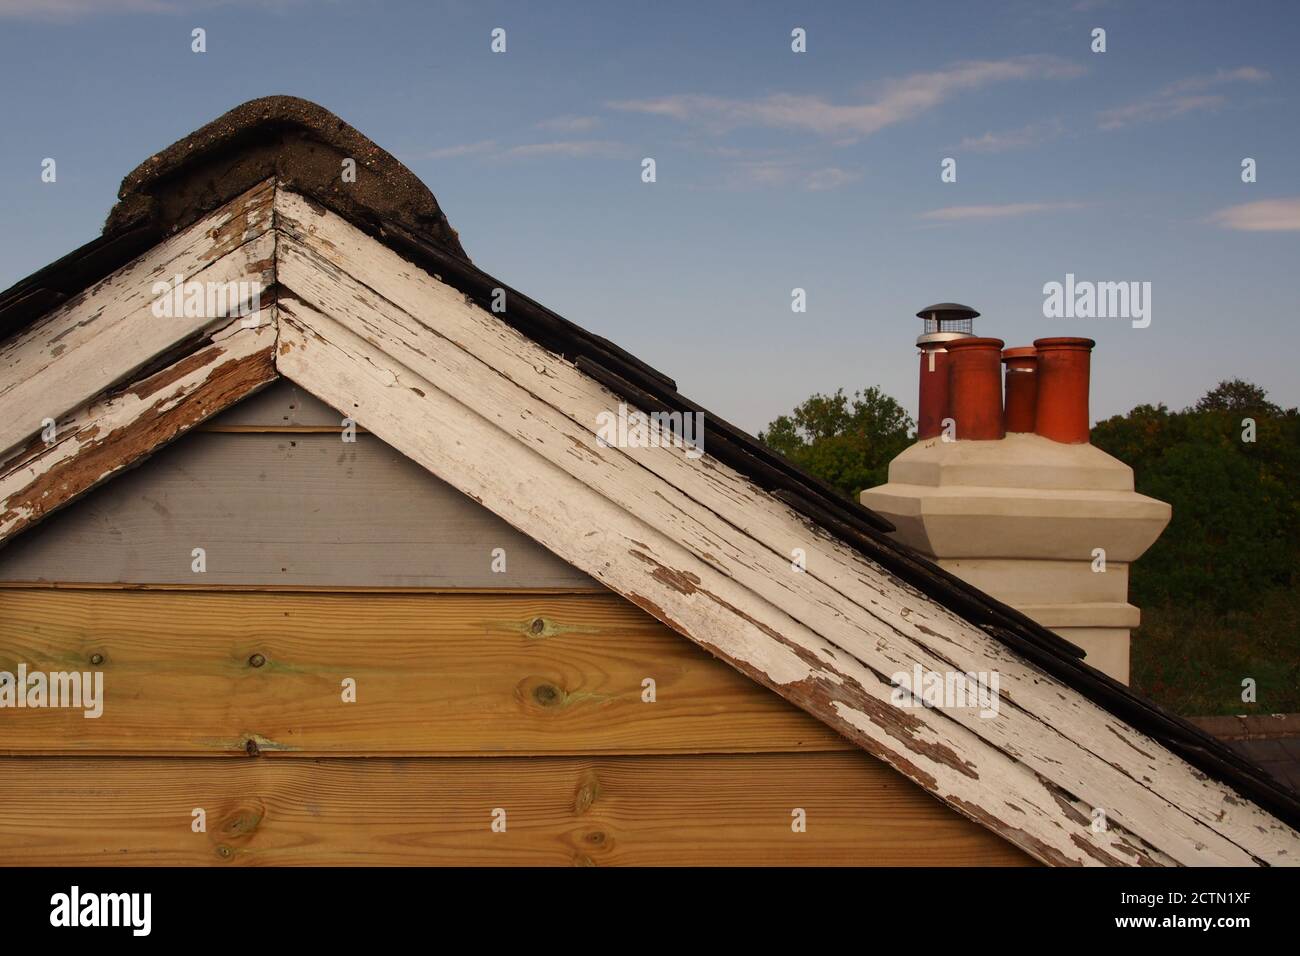 Une vue depuis un échafaudage de l'extrémité de pignon réparée d'une ancienne maison en bois, avec un toit en ardoise, qui a encore besoin d'être peint, et d'anciennes barges Banque D'Images